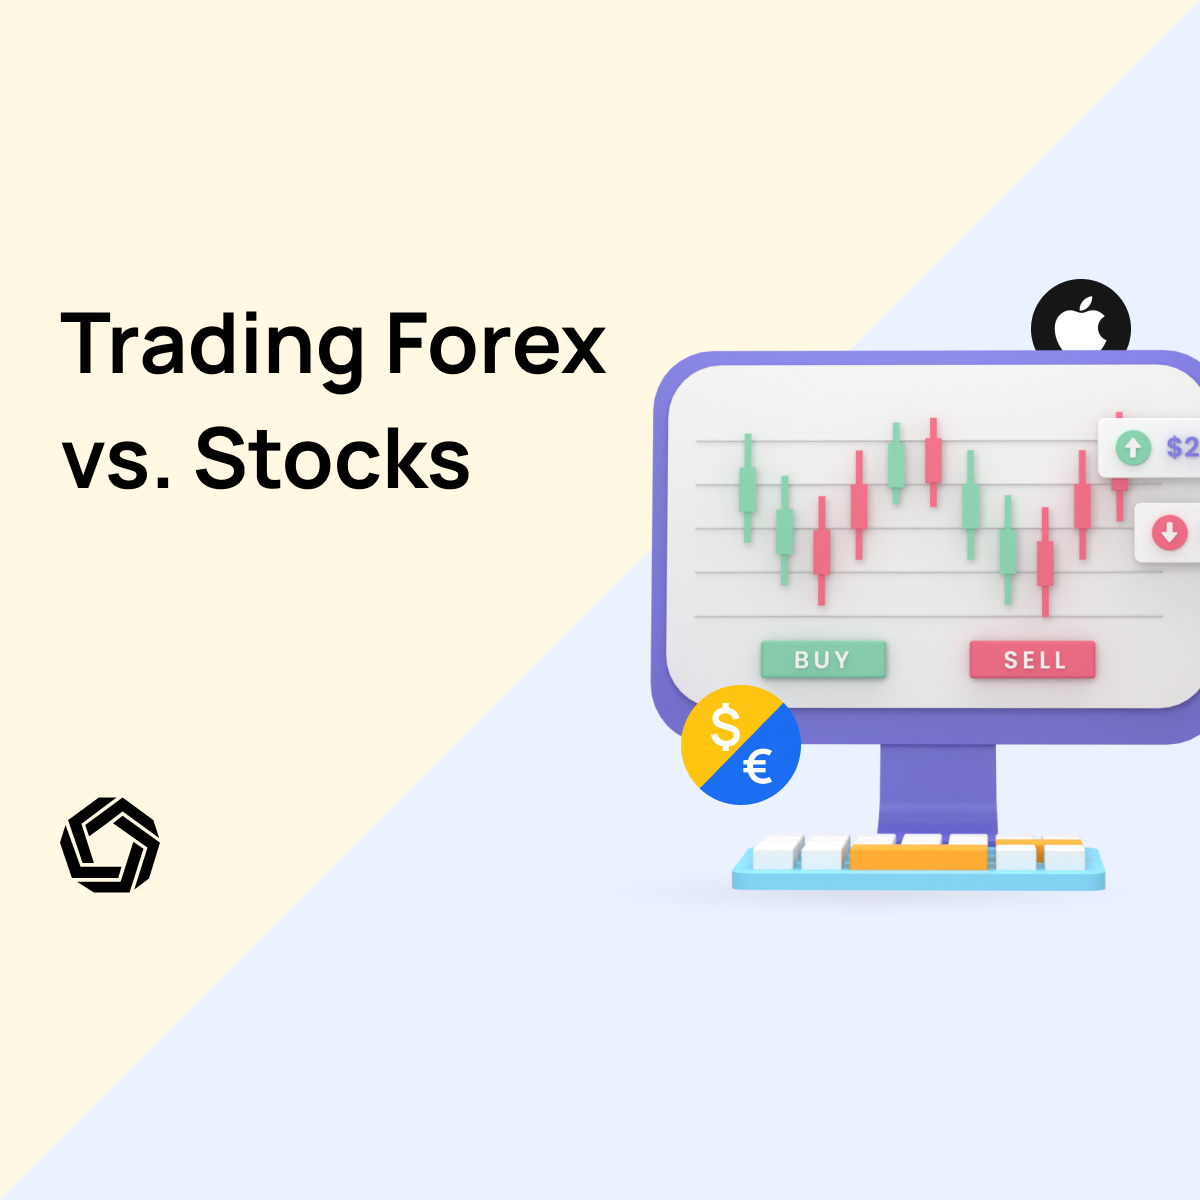 Trading Forex vs. Stocks